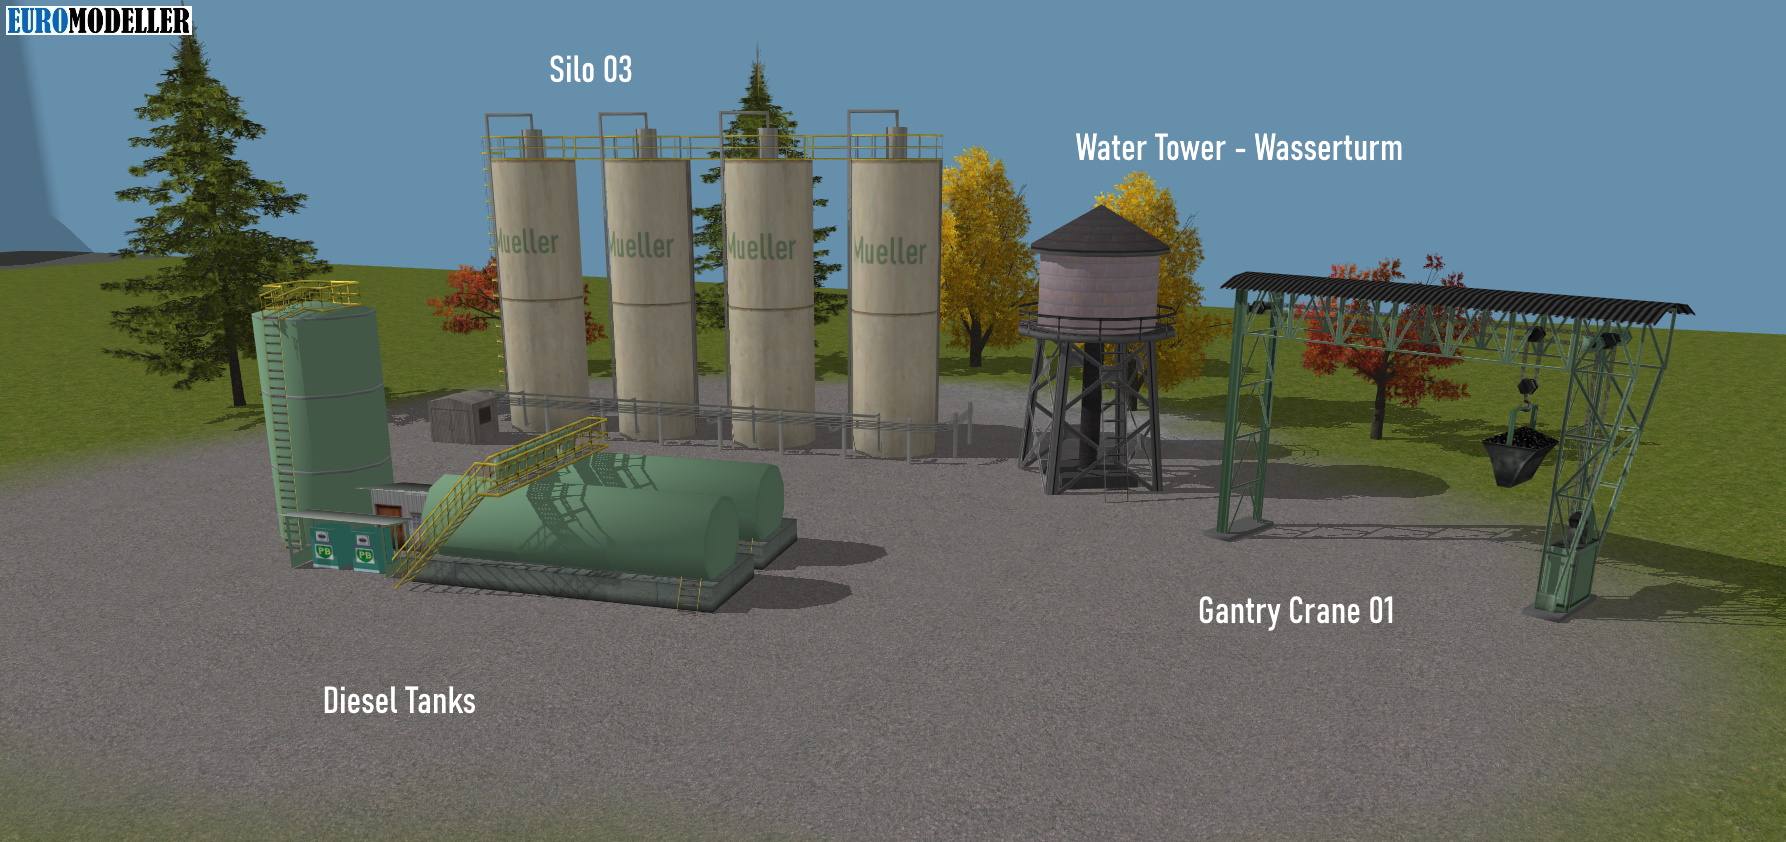 Silos, Diesel Tanks, Water Tower, Overhead Crane